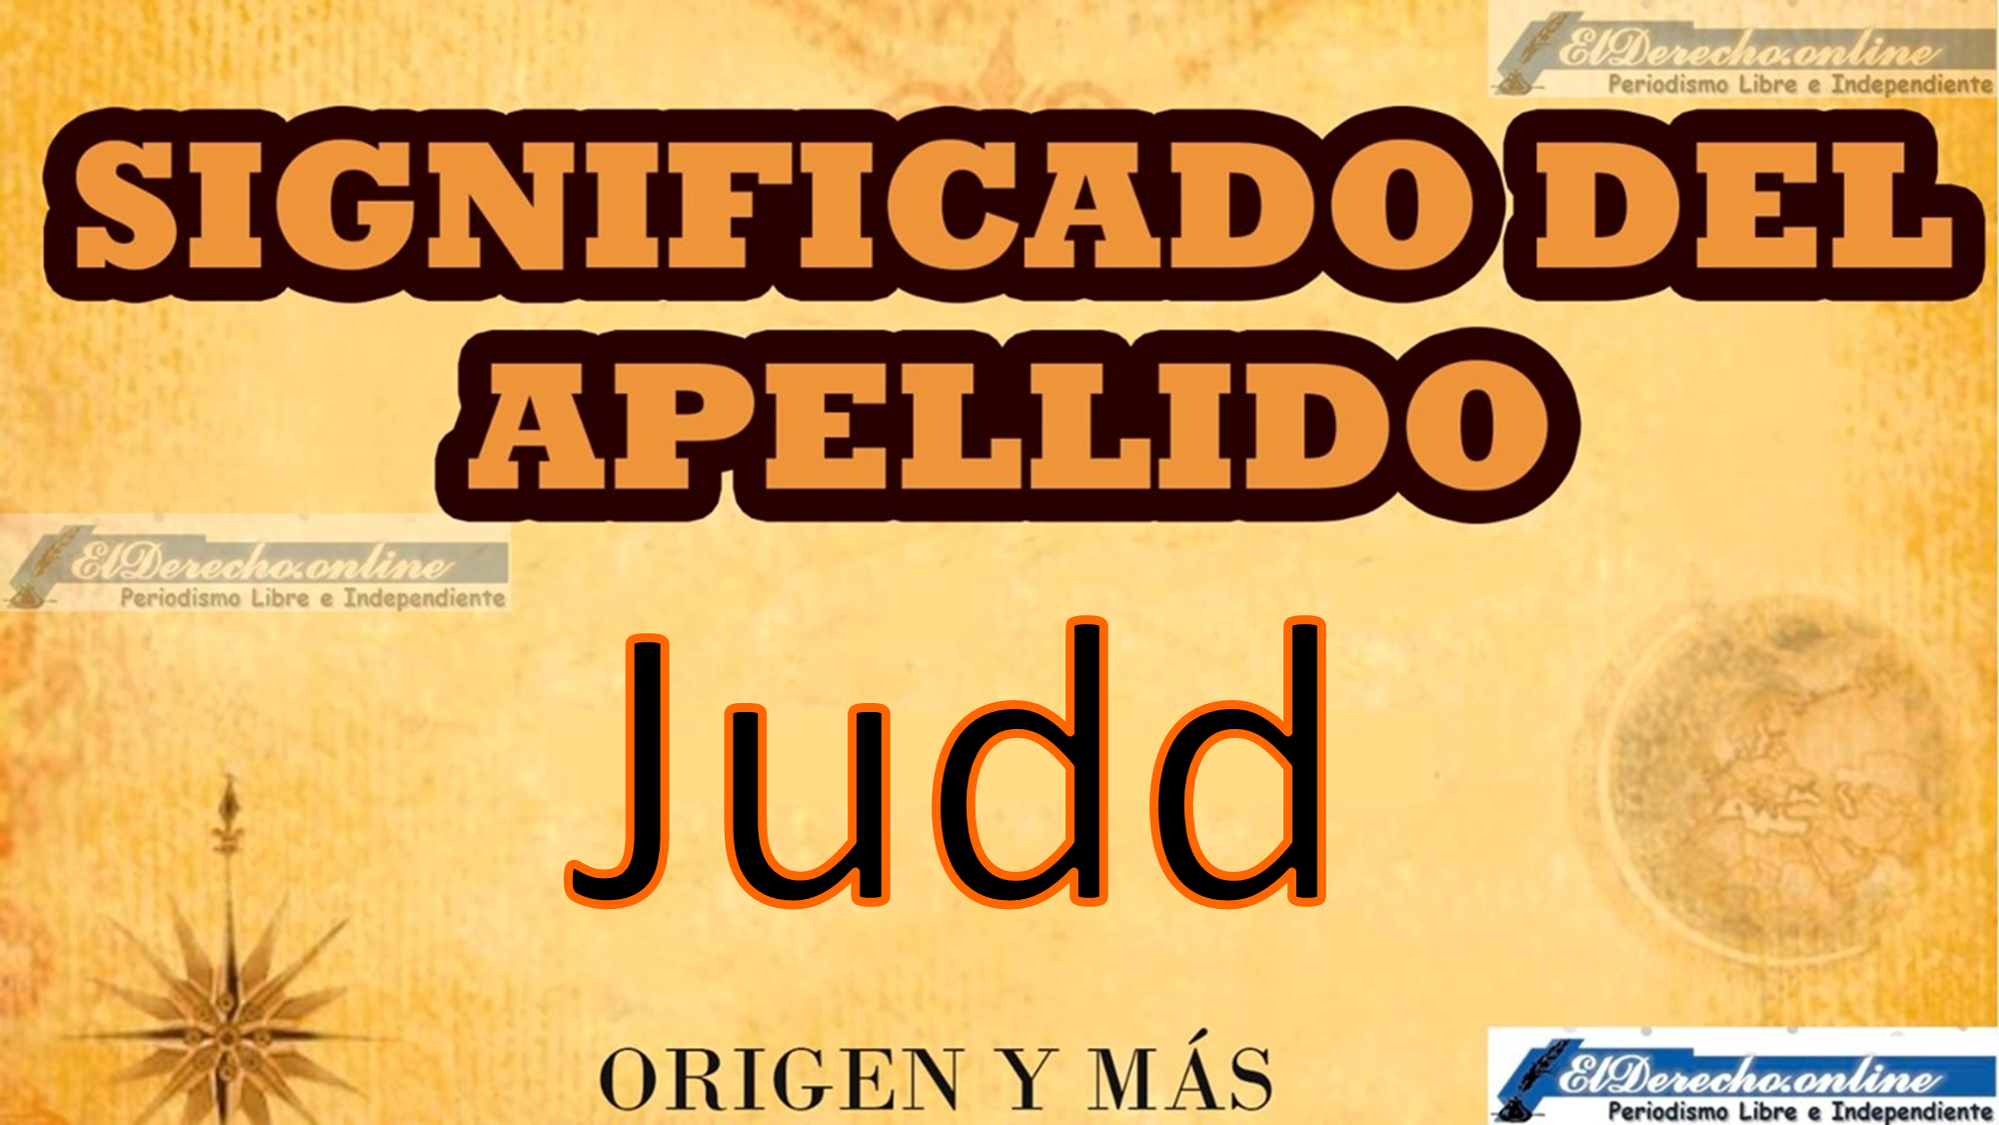 Significado del apellido Judd, Origen y más